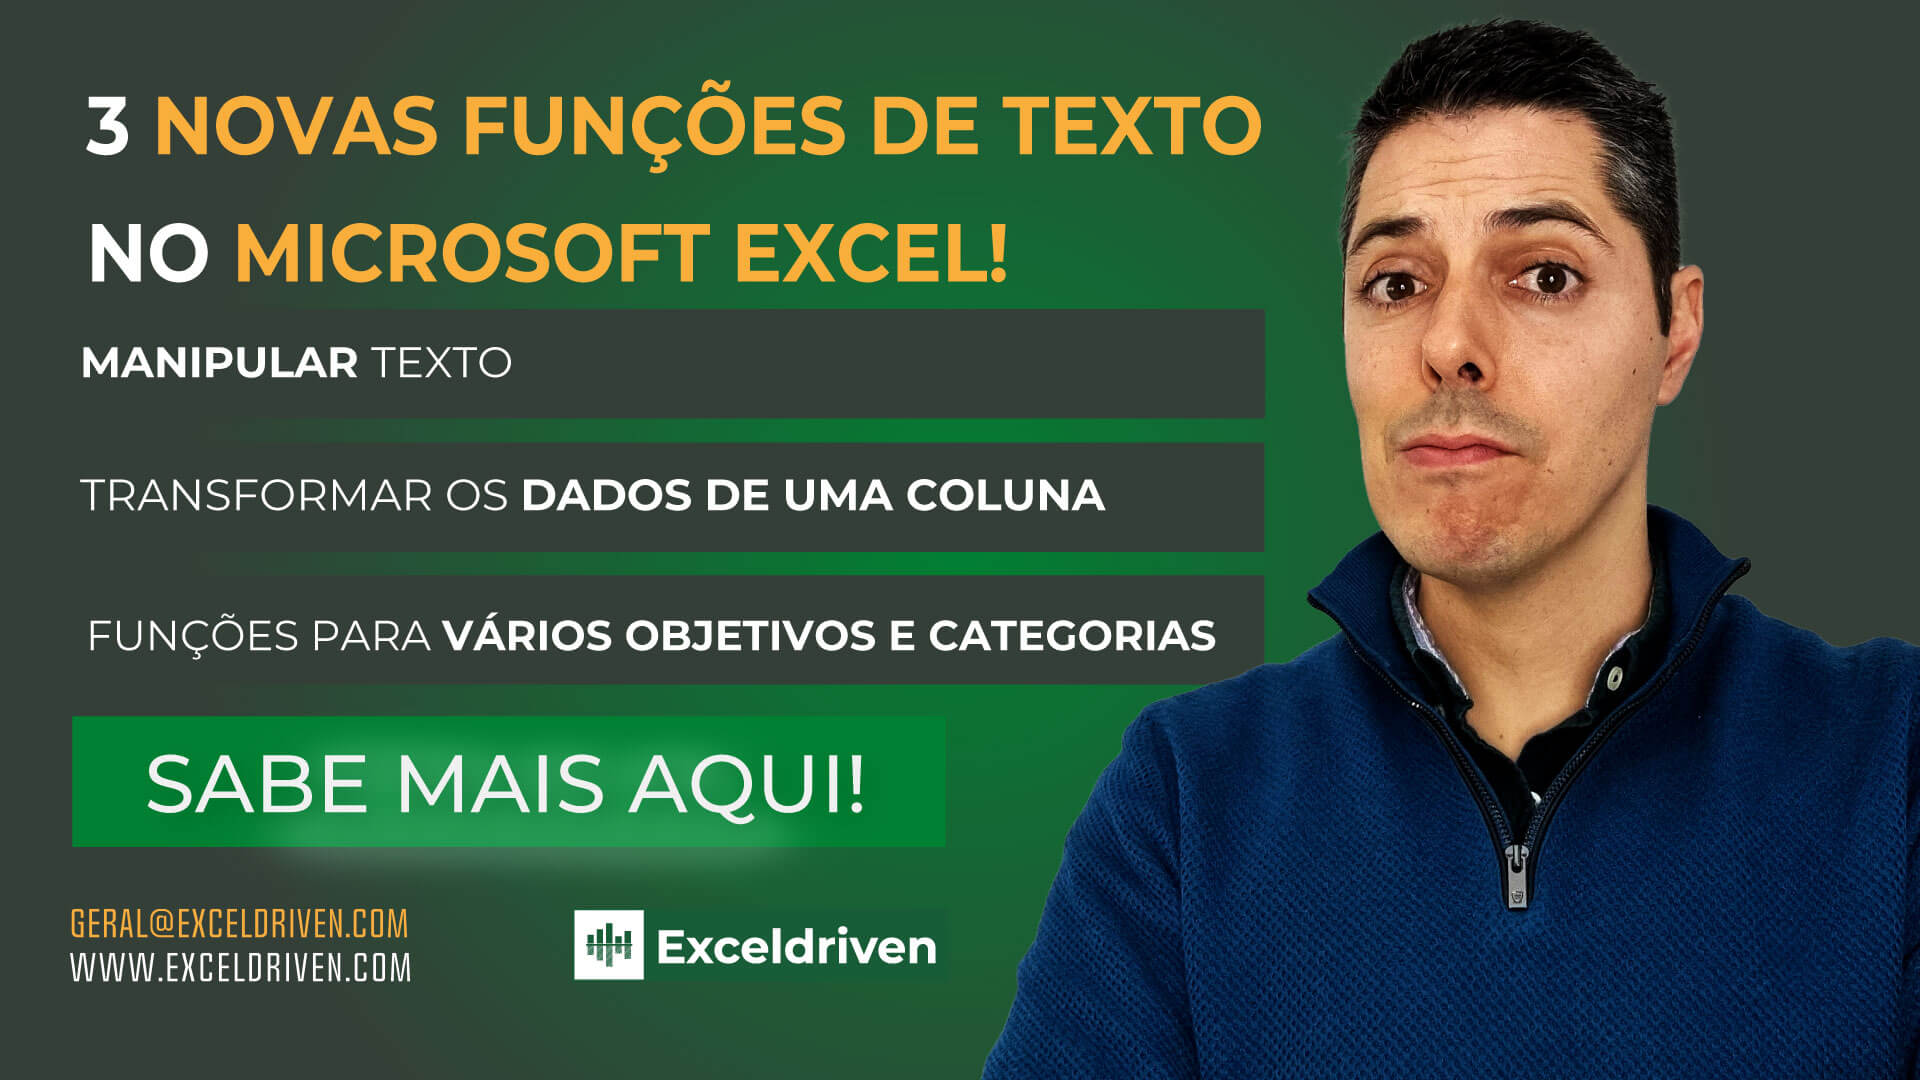 Existem 3 novas funções de texto no Excel!